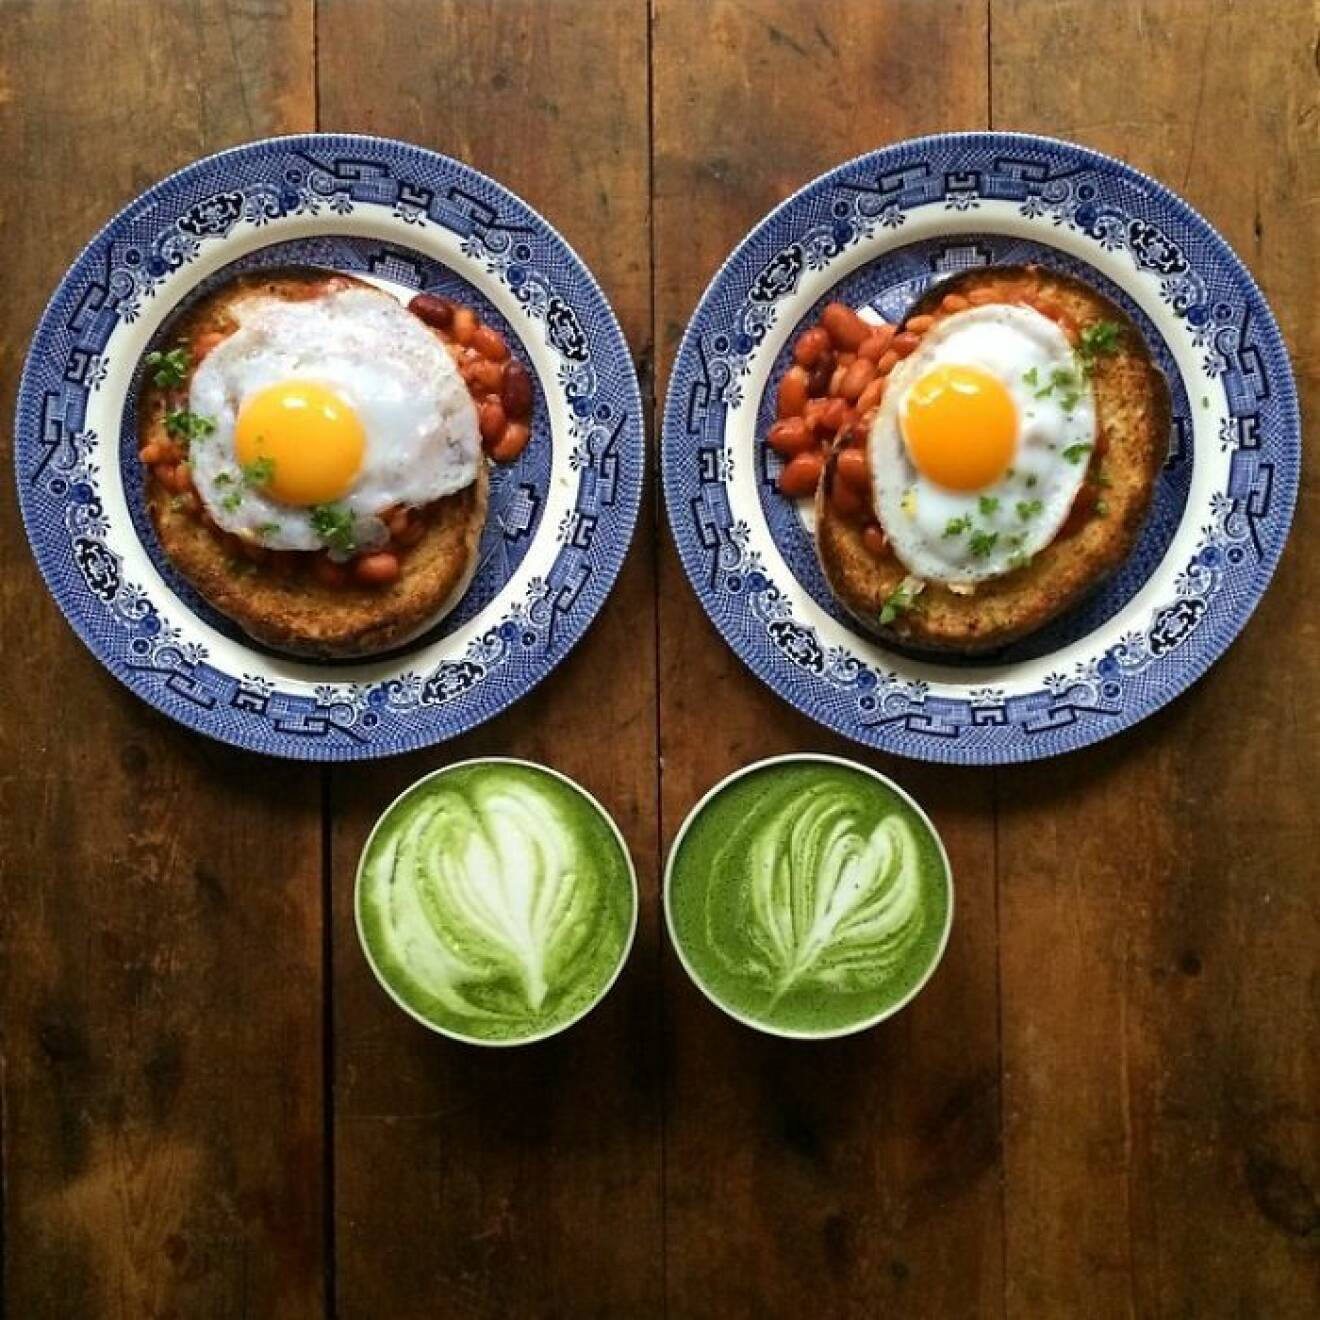 04. symmetry-breakfast-food-photography-michael-zee-60__700